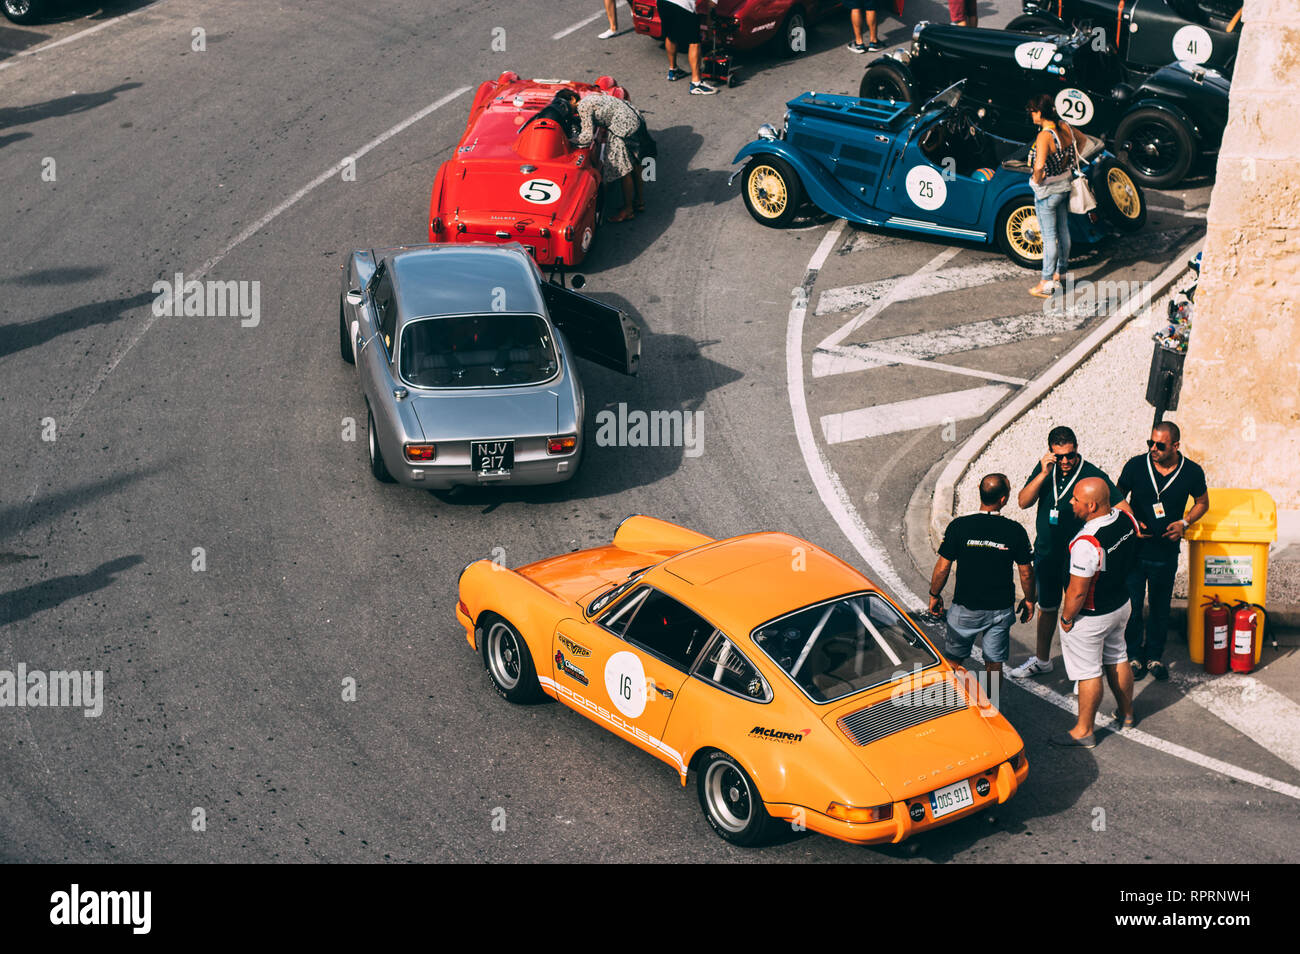 Mdina, Malta - 2016.10.08:  Malta Classic Grand Prix, yellow Porsche 911s, red Triumph Stock Photo